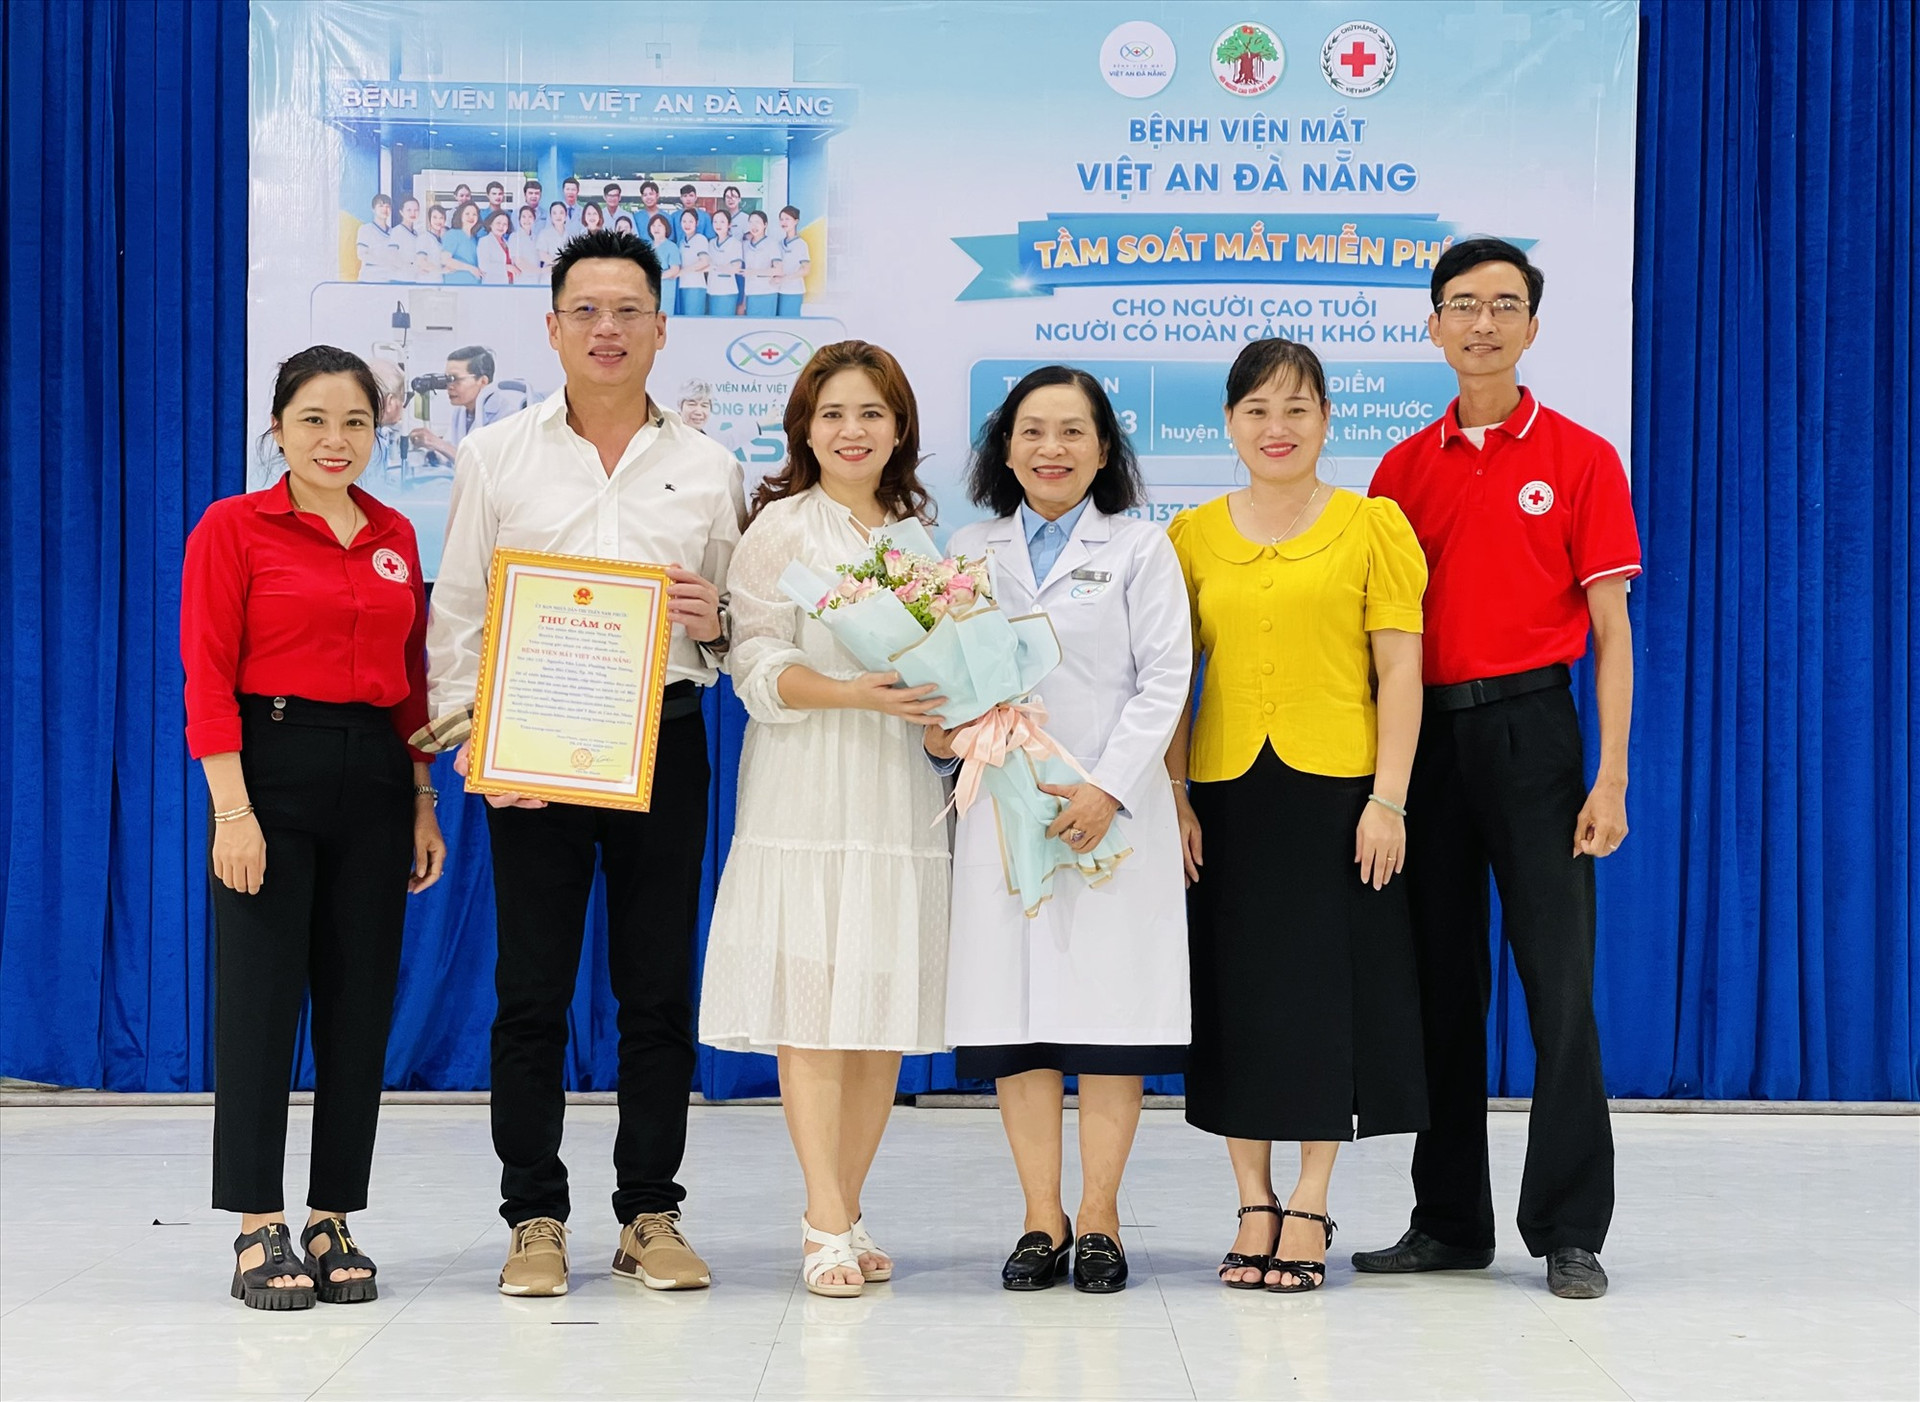 Lãnh đạo Hội Chữ thập đỏ huyện Duy Xuyên và thị trấn Nam Phước tặng bảng tri ân cho Bệnh viện Mắt Việt An. Ảnh: N.T